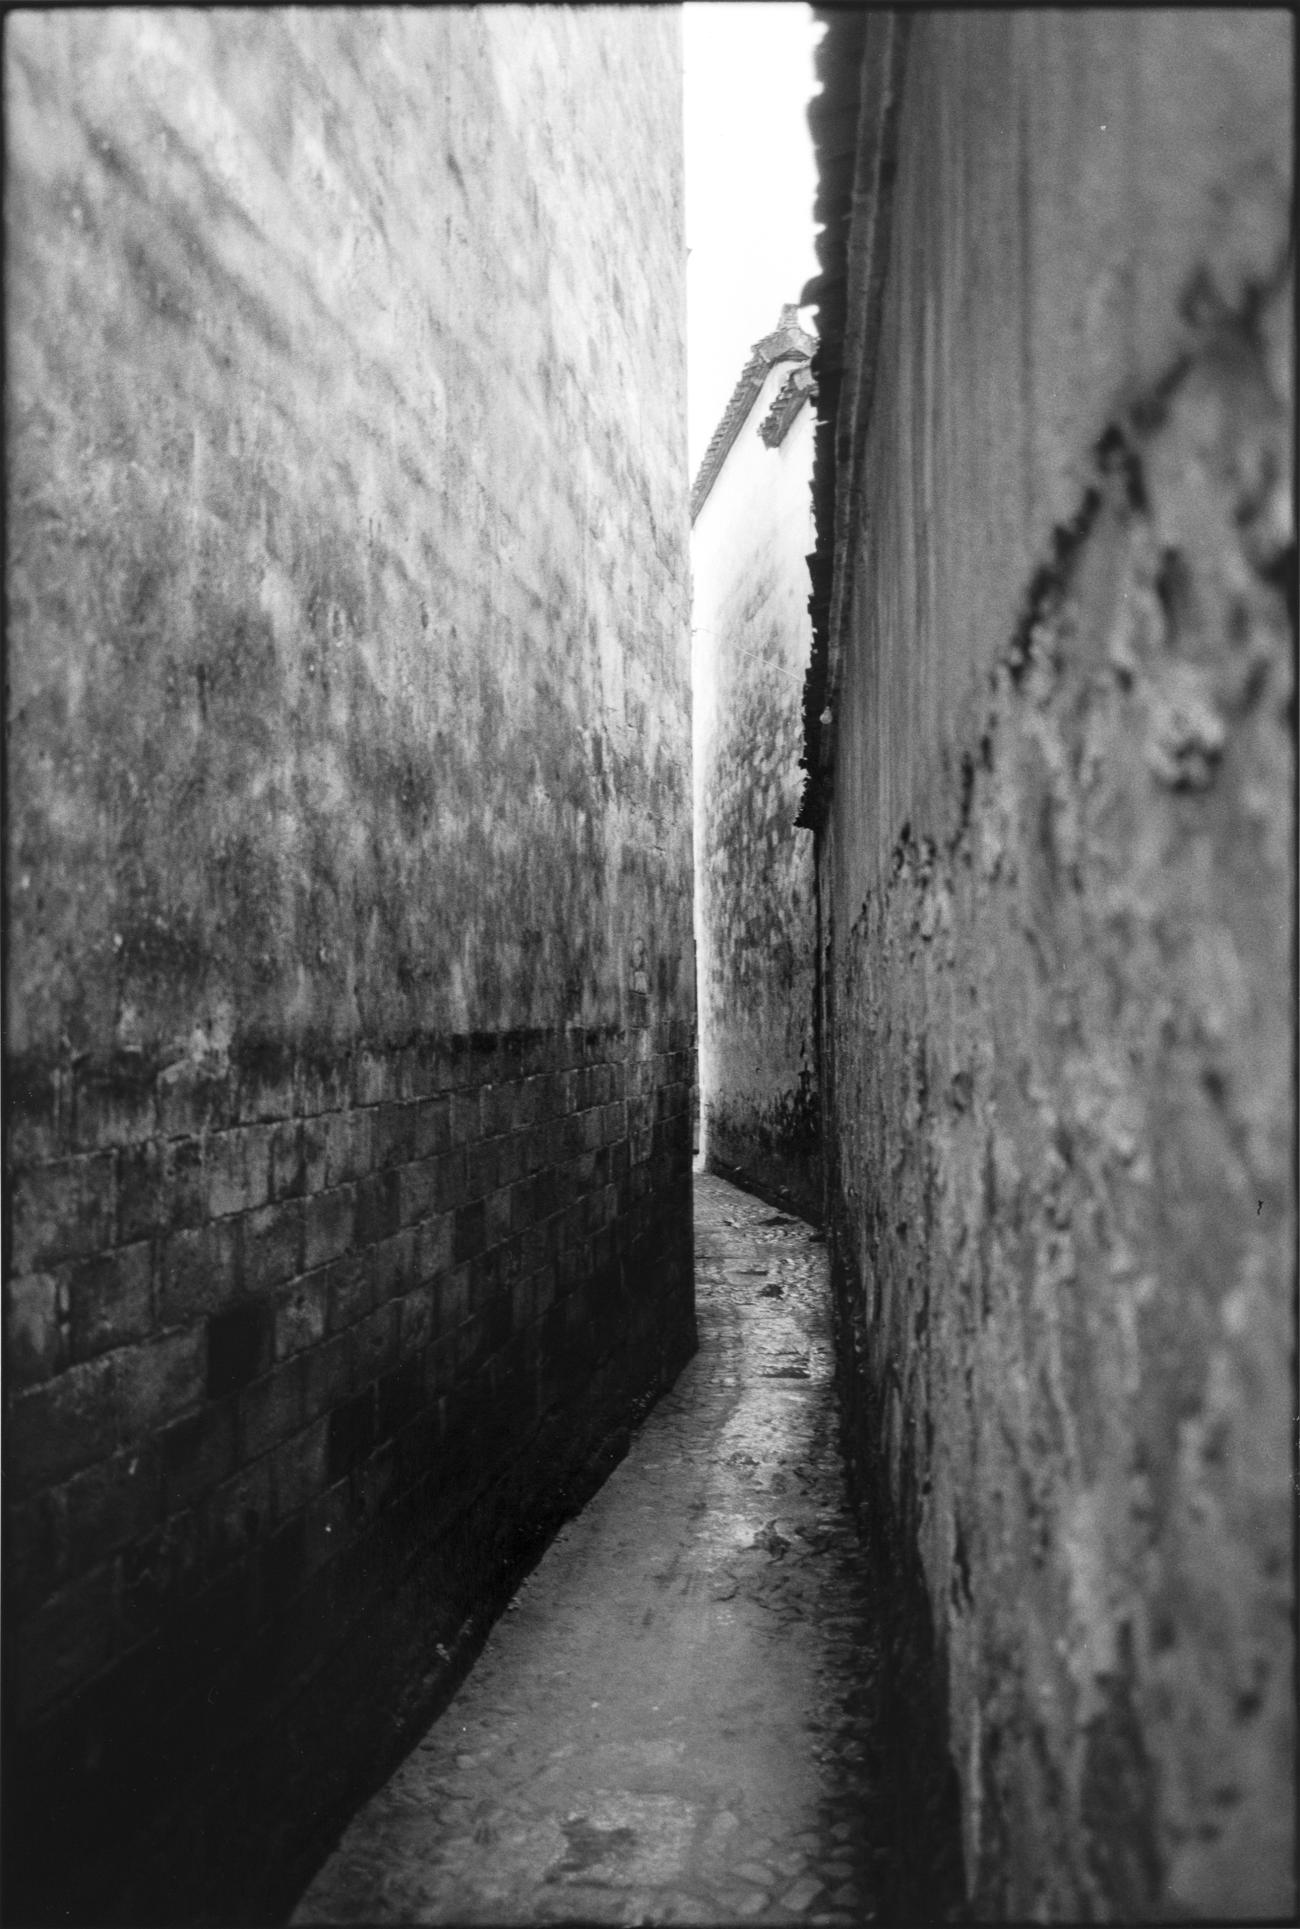 photo noir blanc ruelle entre deux murs hauts